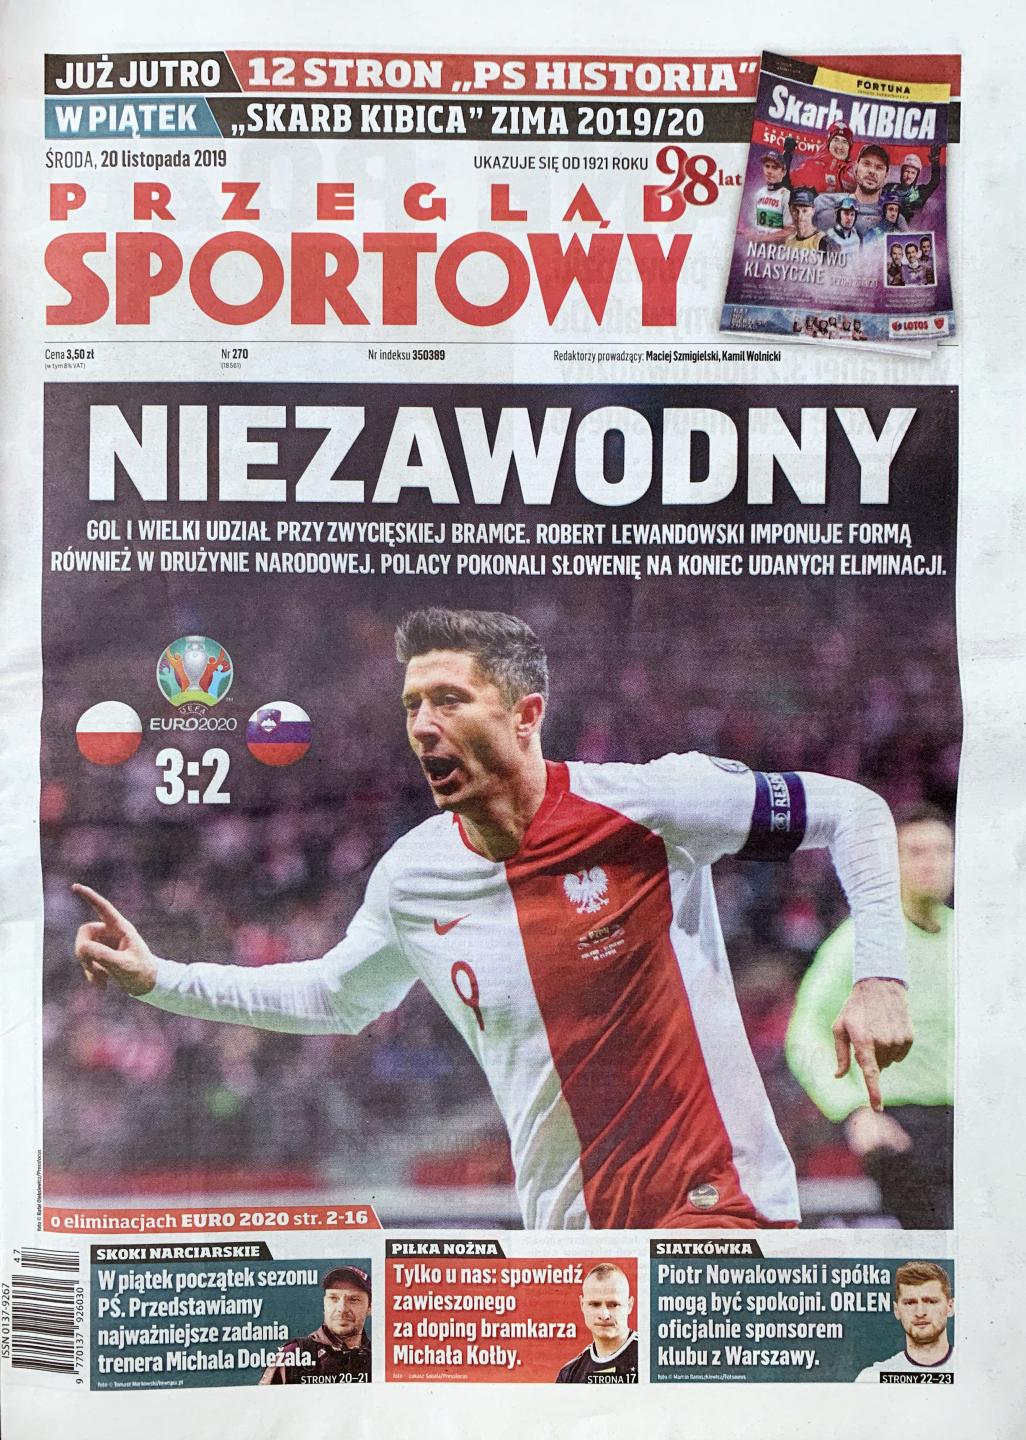 Okładka przegladu sportowego po meczu Polska - Słowenia (19.11.2019) 